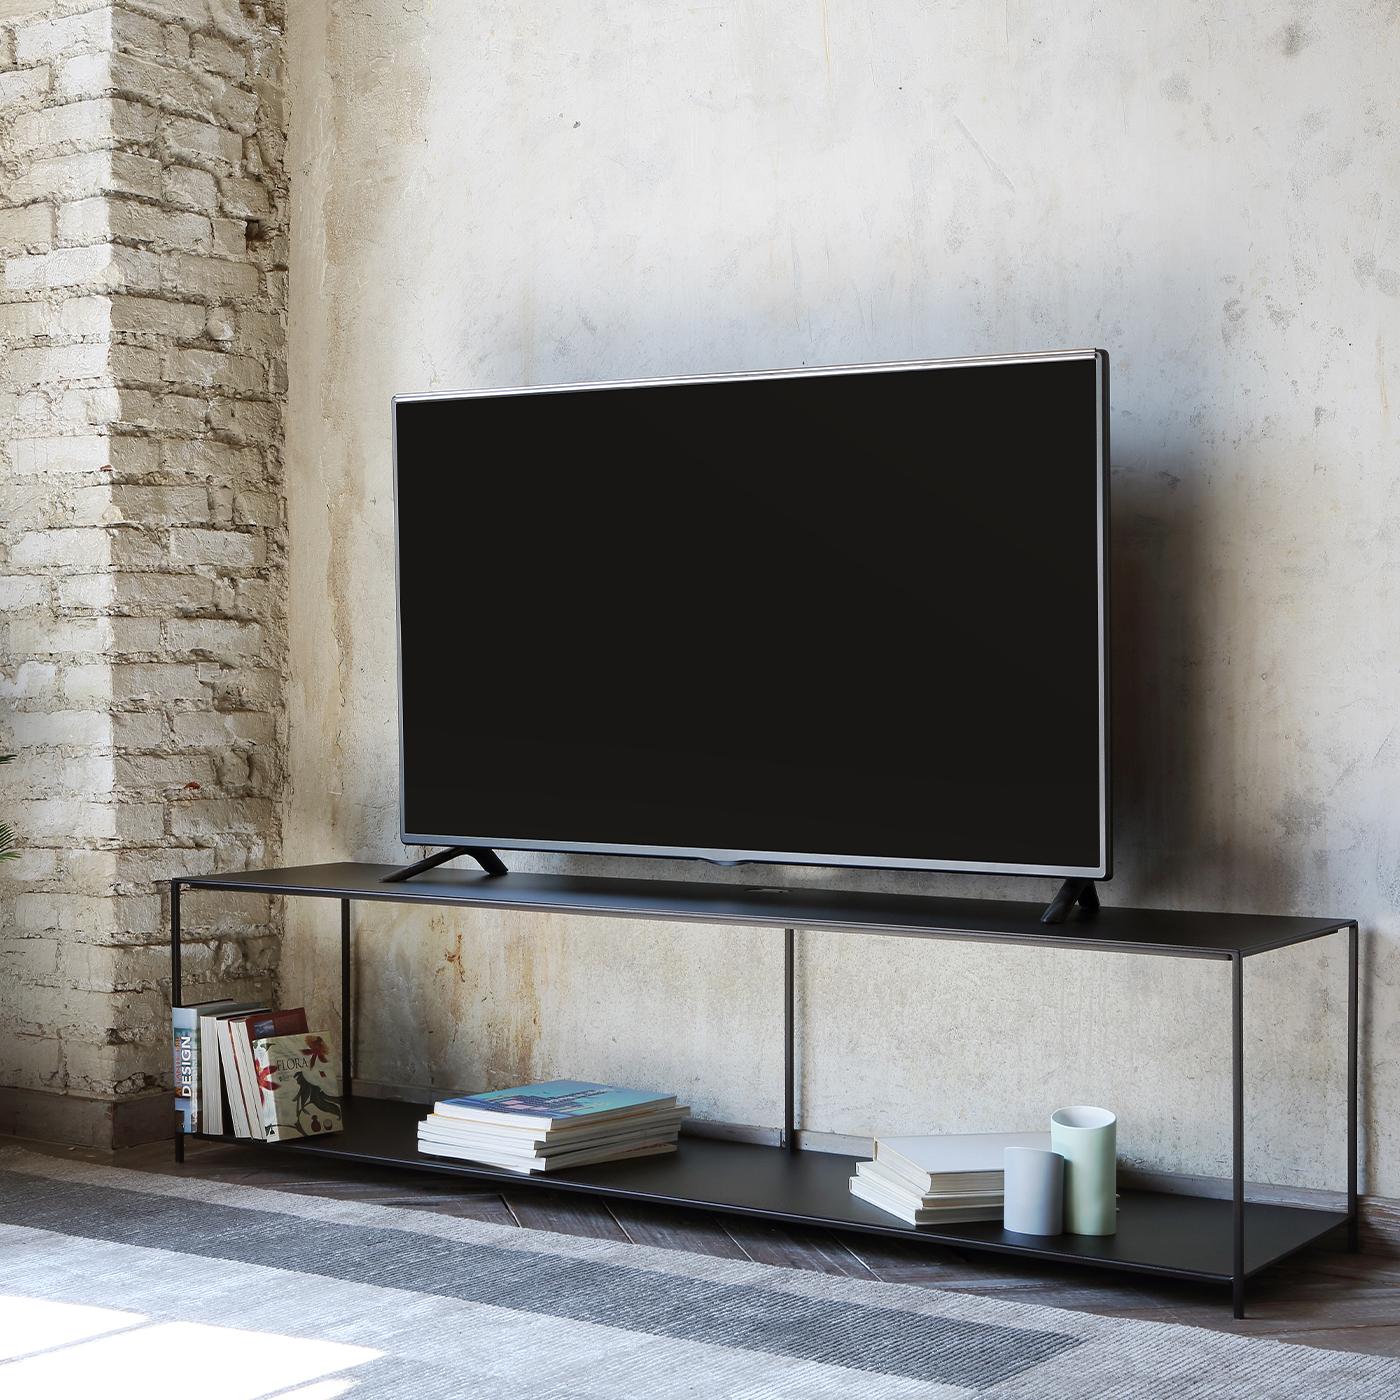 Ode au minimalisme qui s'exprime facilement à travers des lignes épurées et rigoureuses, ce meuble TV en cuivre constitue un complément astucieux et cohérent aux décors contemporains de style essentiel. Cinq minces éléments cylindriques soutiennent